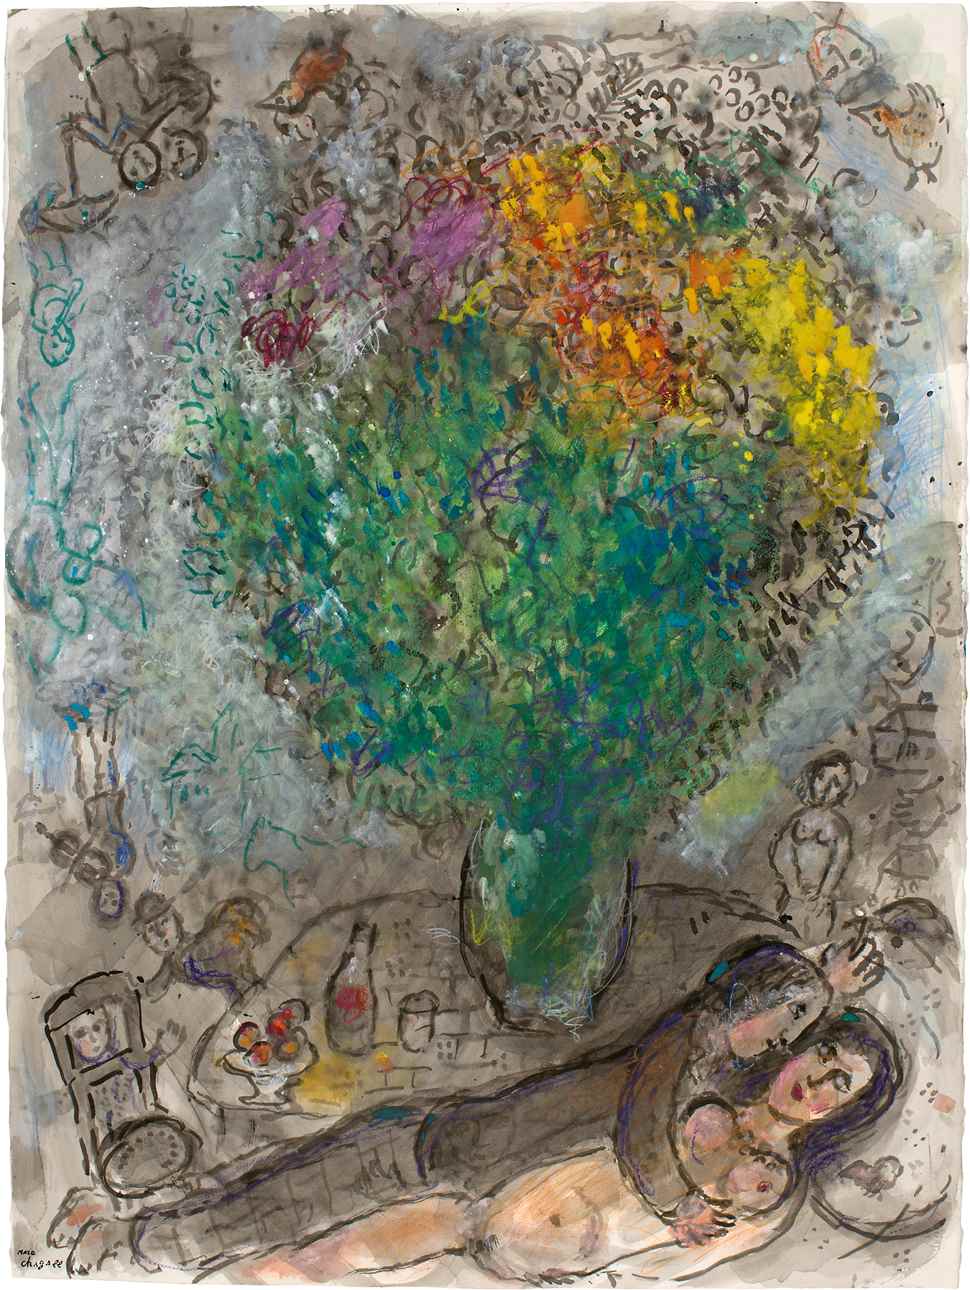 Couple Allongé au Grand Bouquet - Marc Chagall (1887 - 1985)